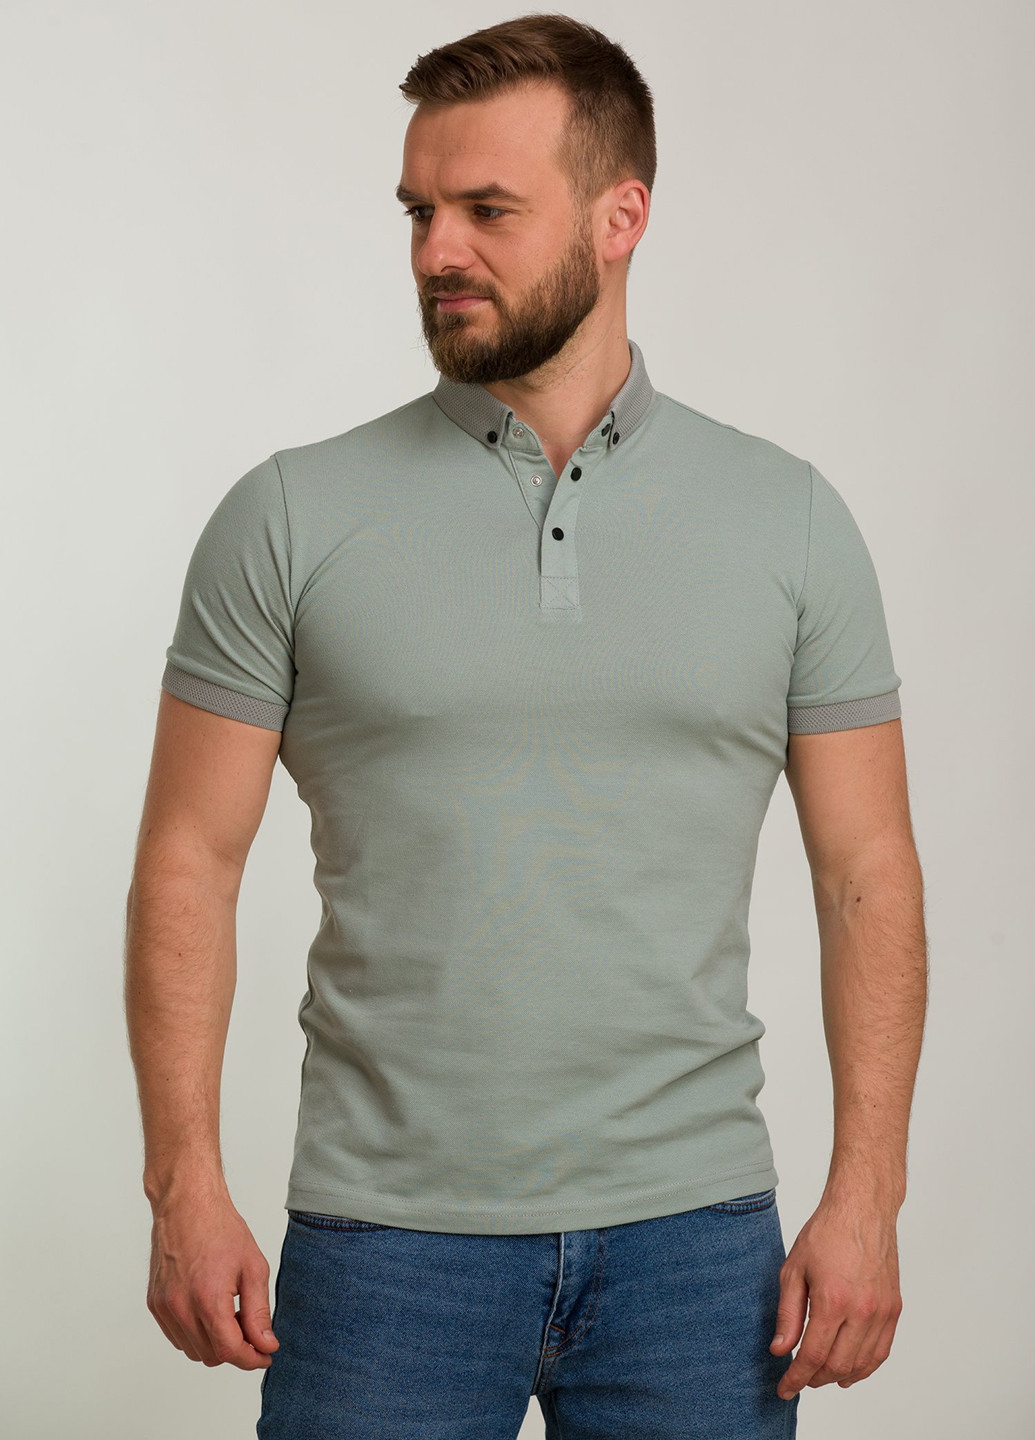 Серо-зеленая футболка-поло для мужчин Trend Collection однотонная